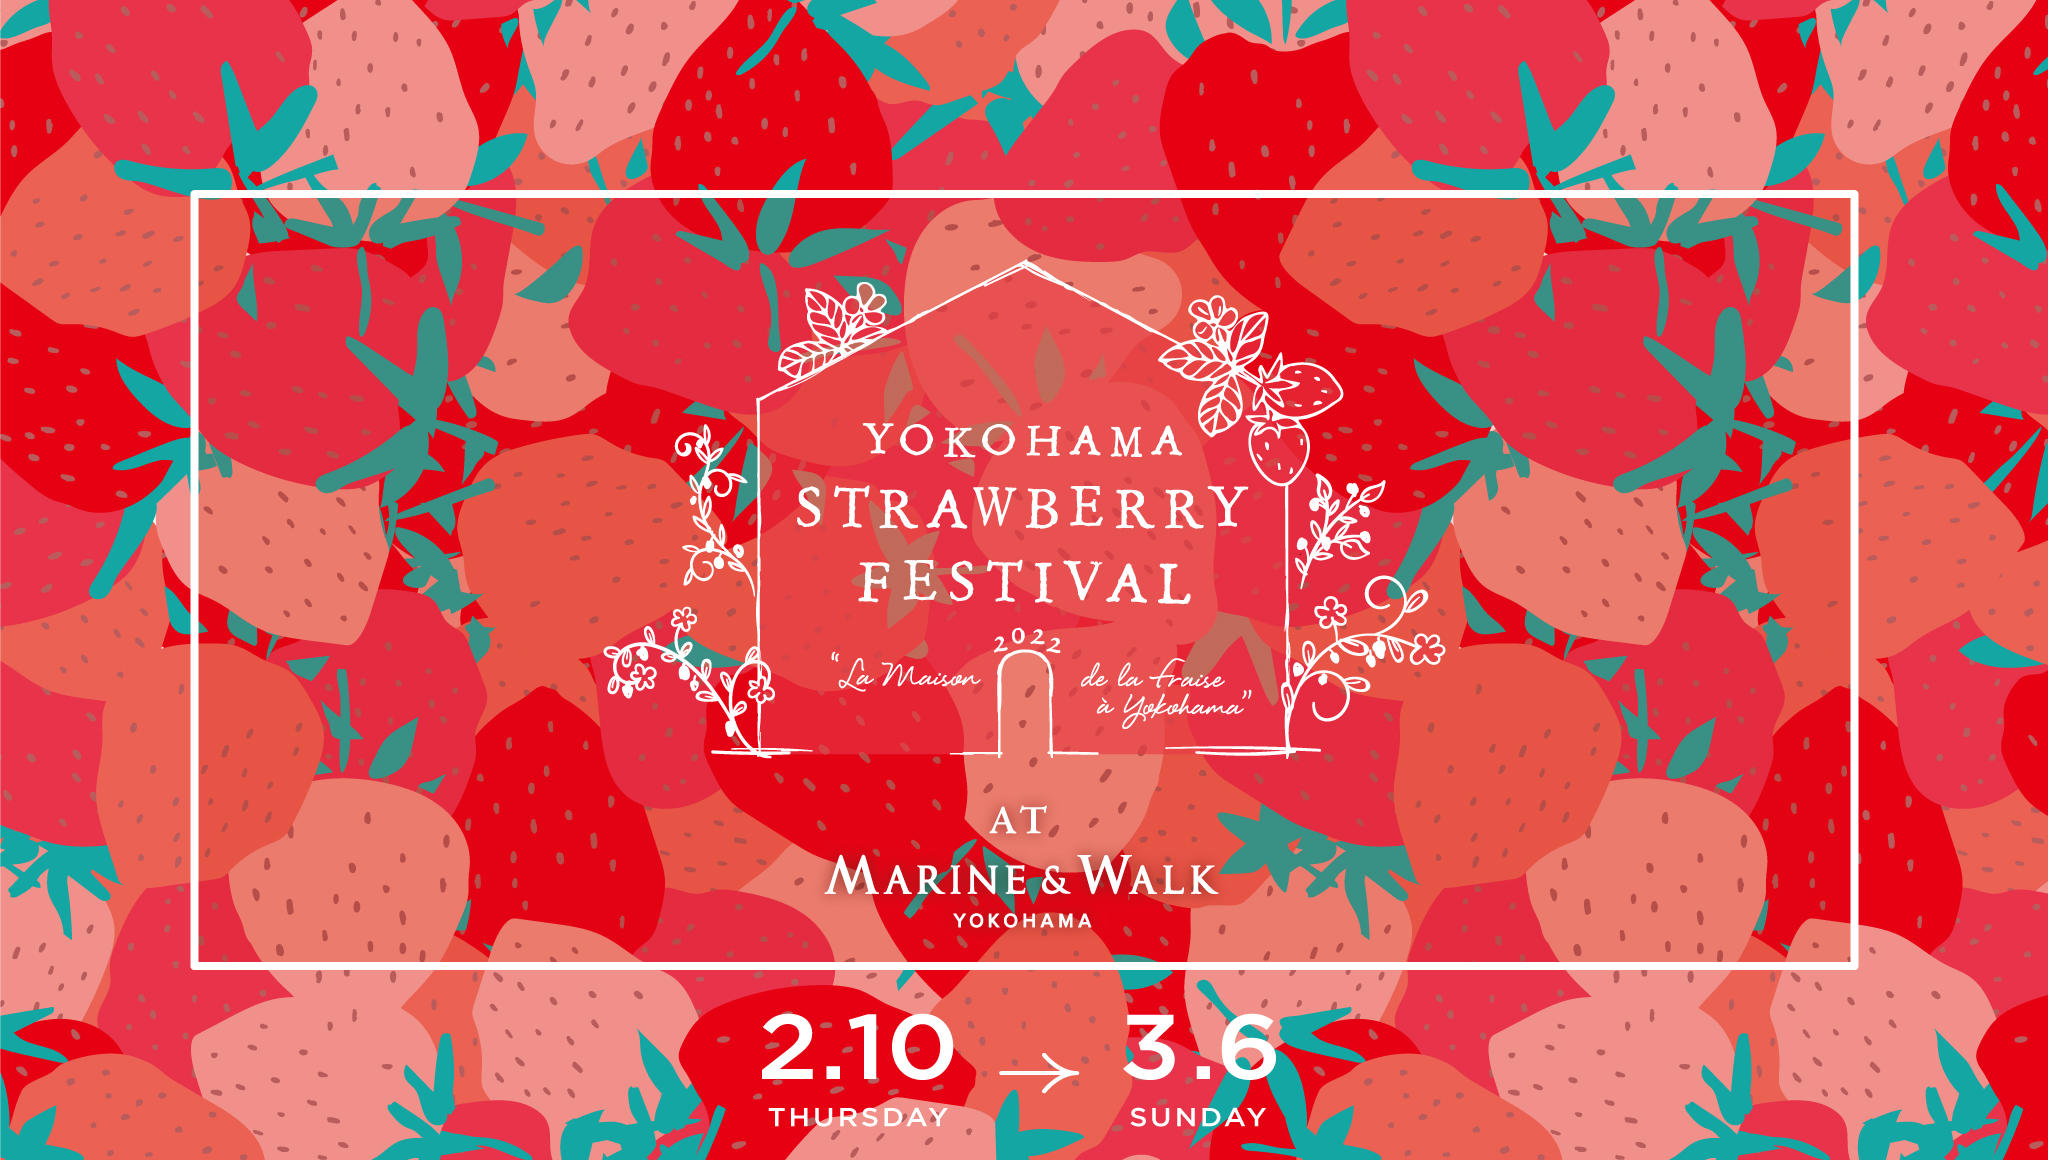 Strawberry Festival 2022　2.10 THU - 3.6 SUN